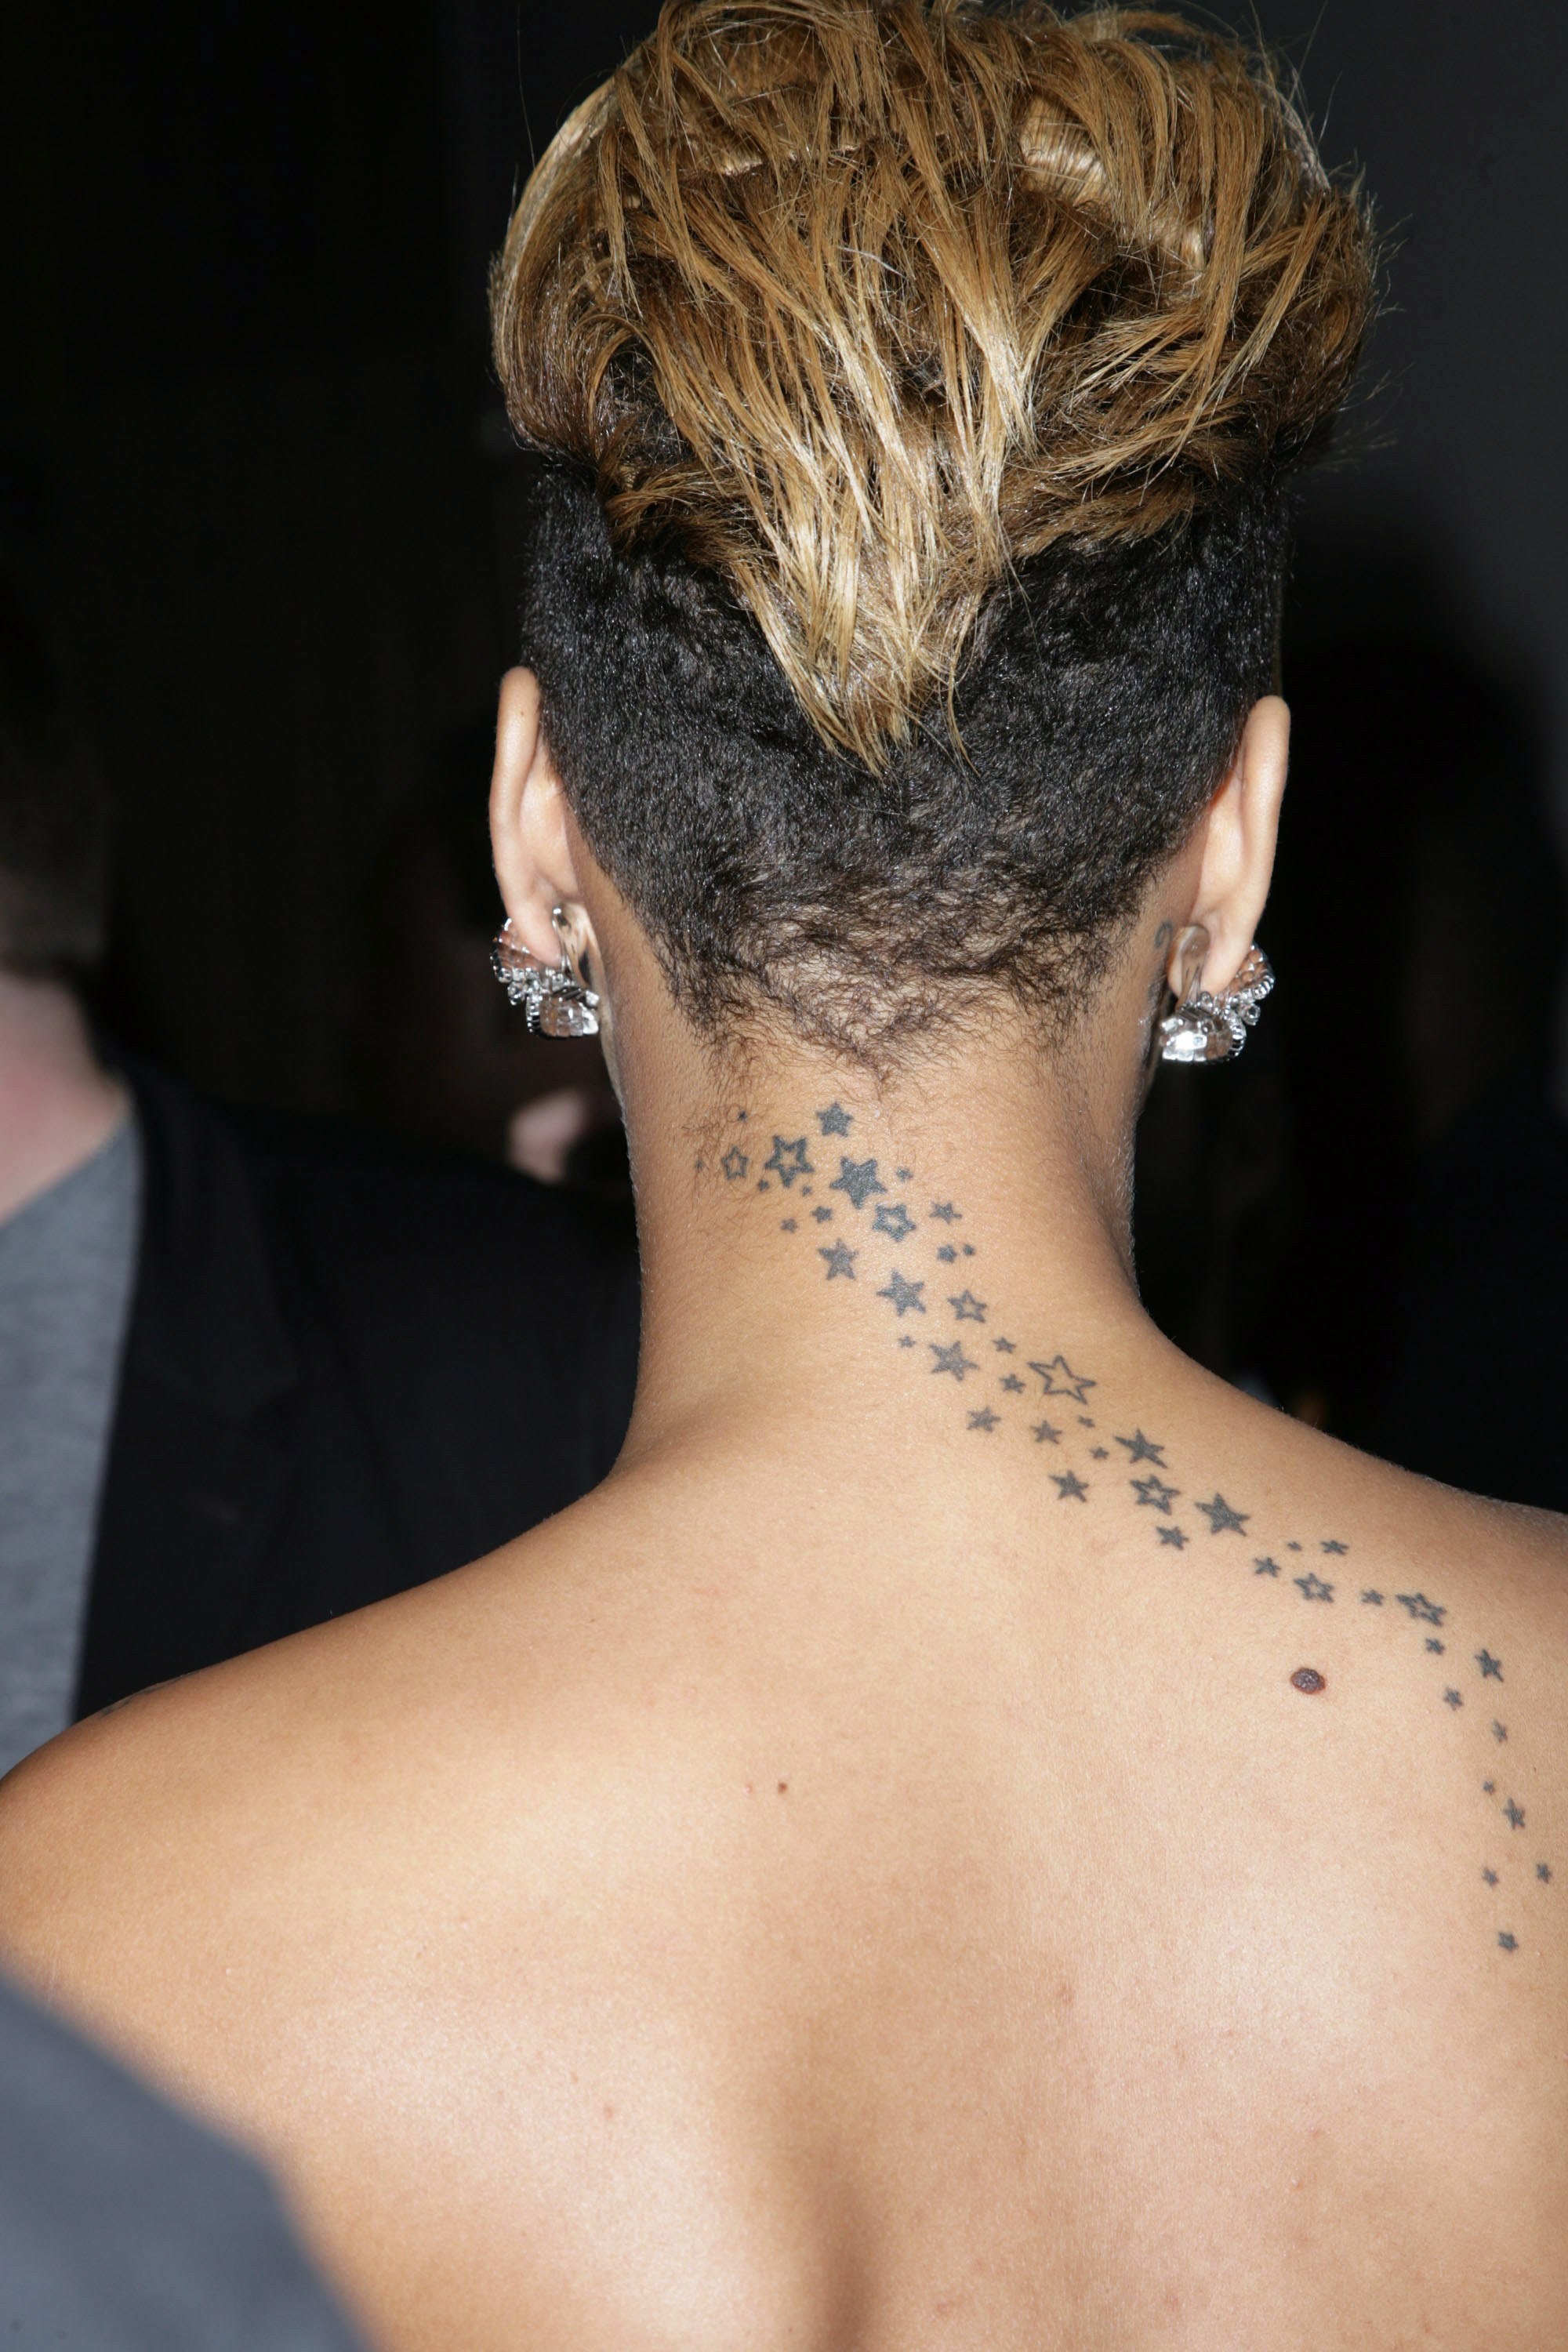 Rihannas Tattoos An Overview  Tattoo for a week